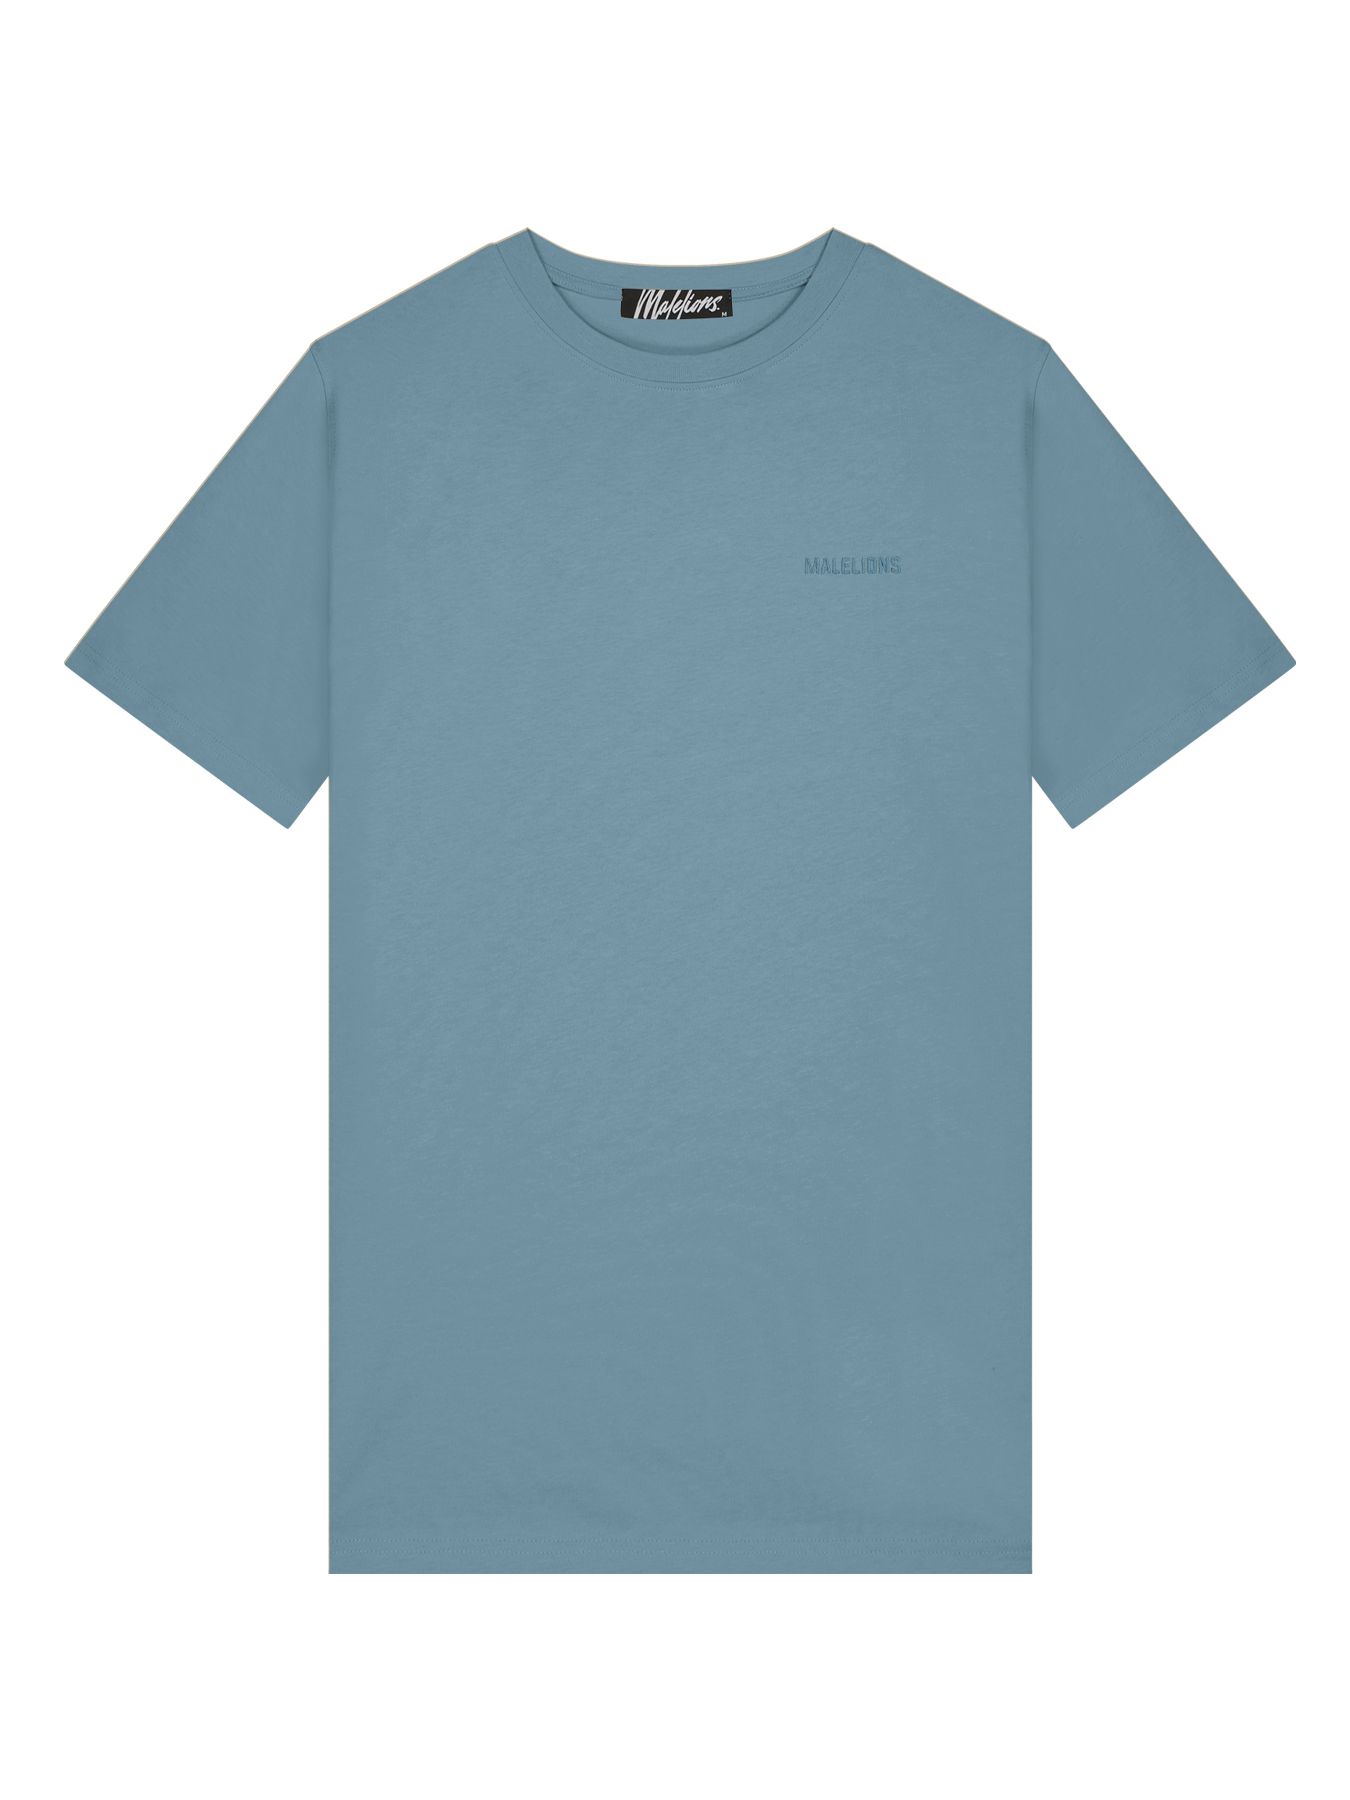 Malelions M3-ss23-19 T-shirt Smoke Blue 00103900-SMBL